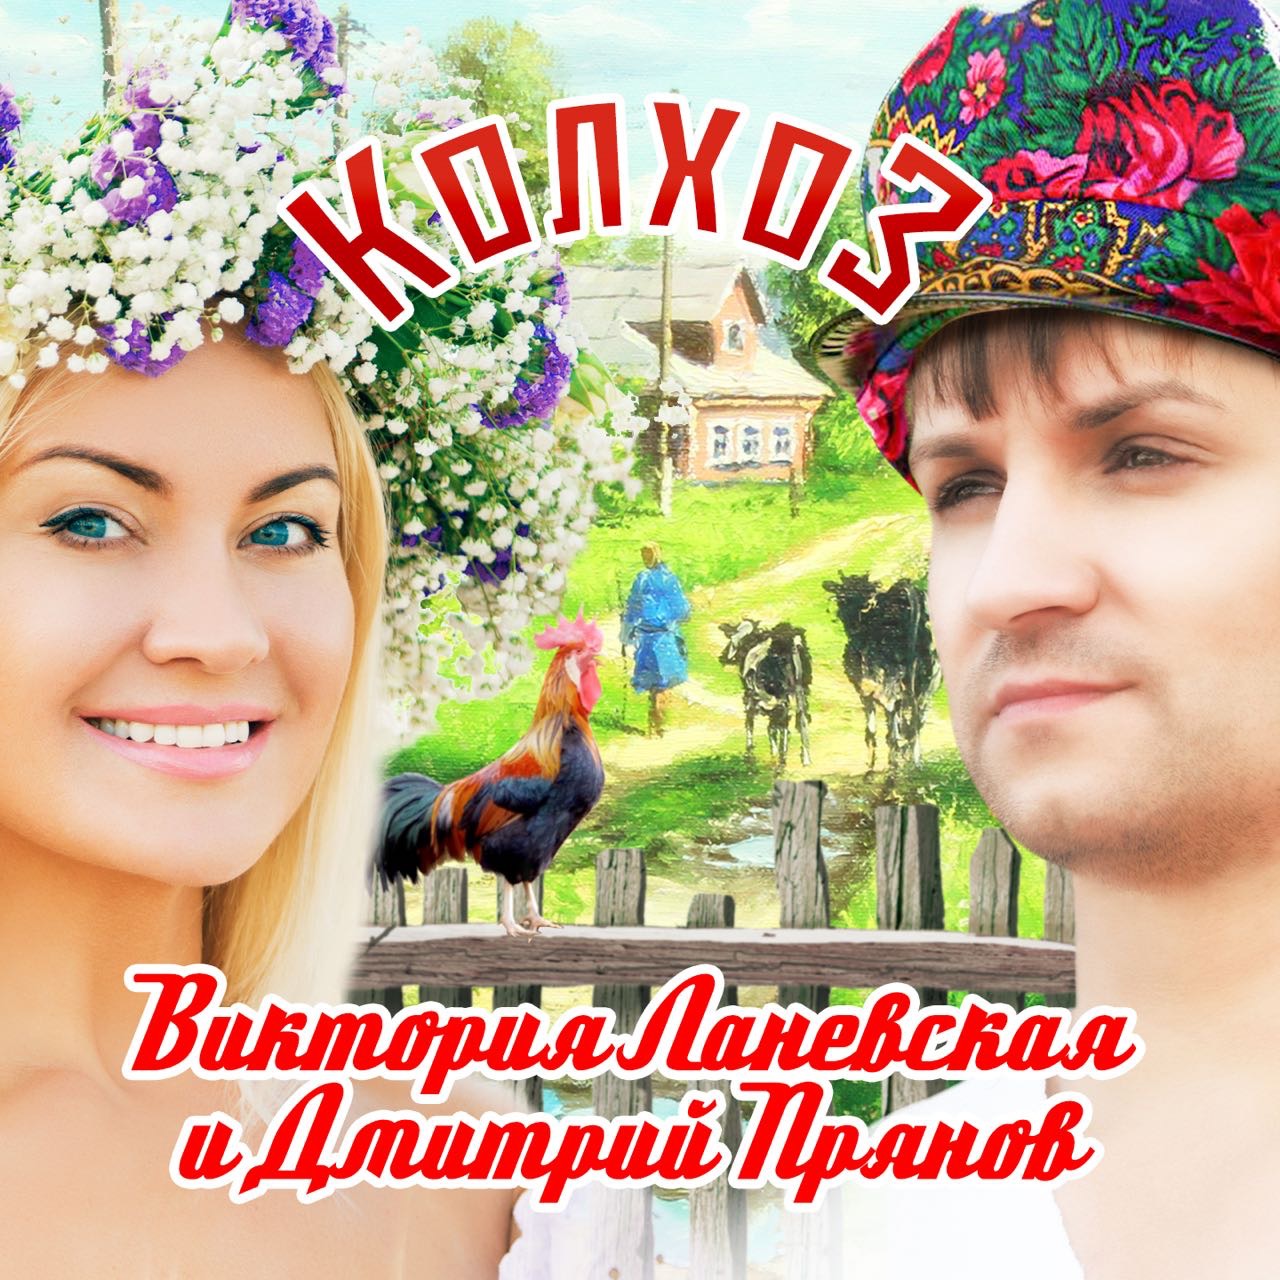 Виктория Ланевская и Дмитрий Прянов презентовали дуэтную песню "Колхоз". 